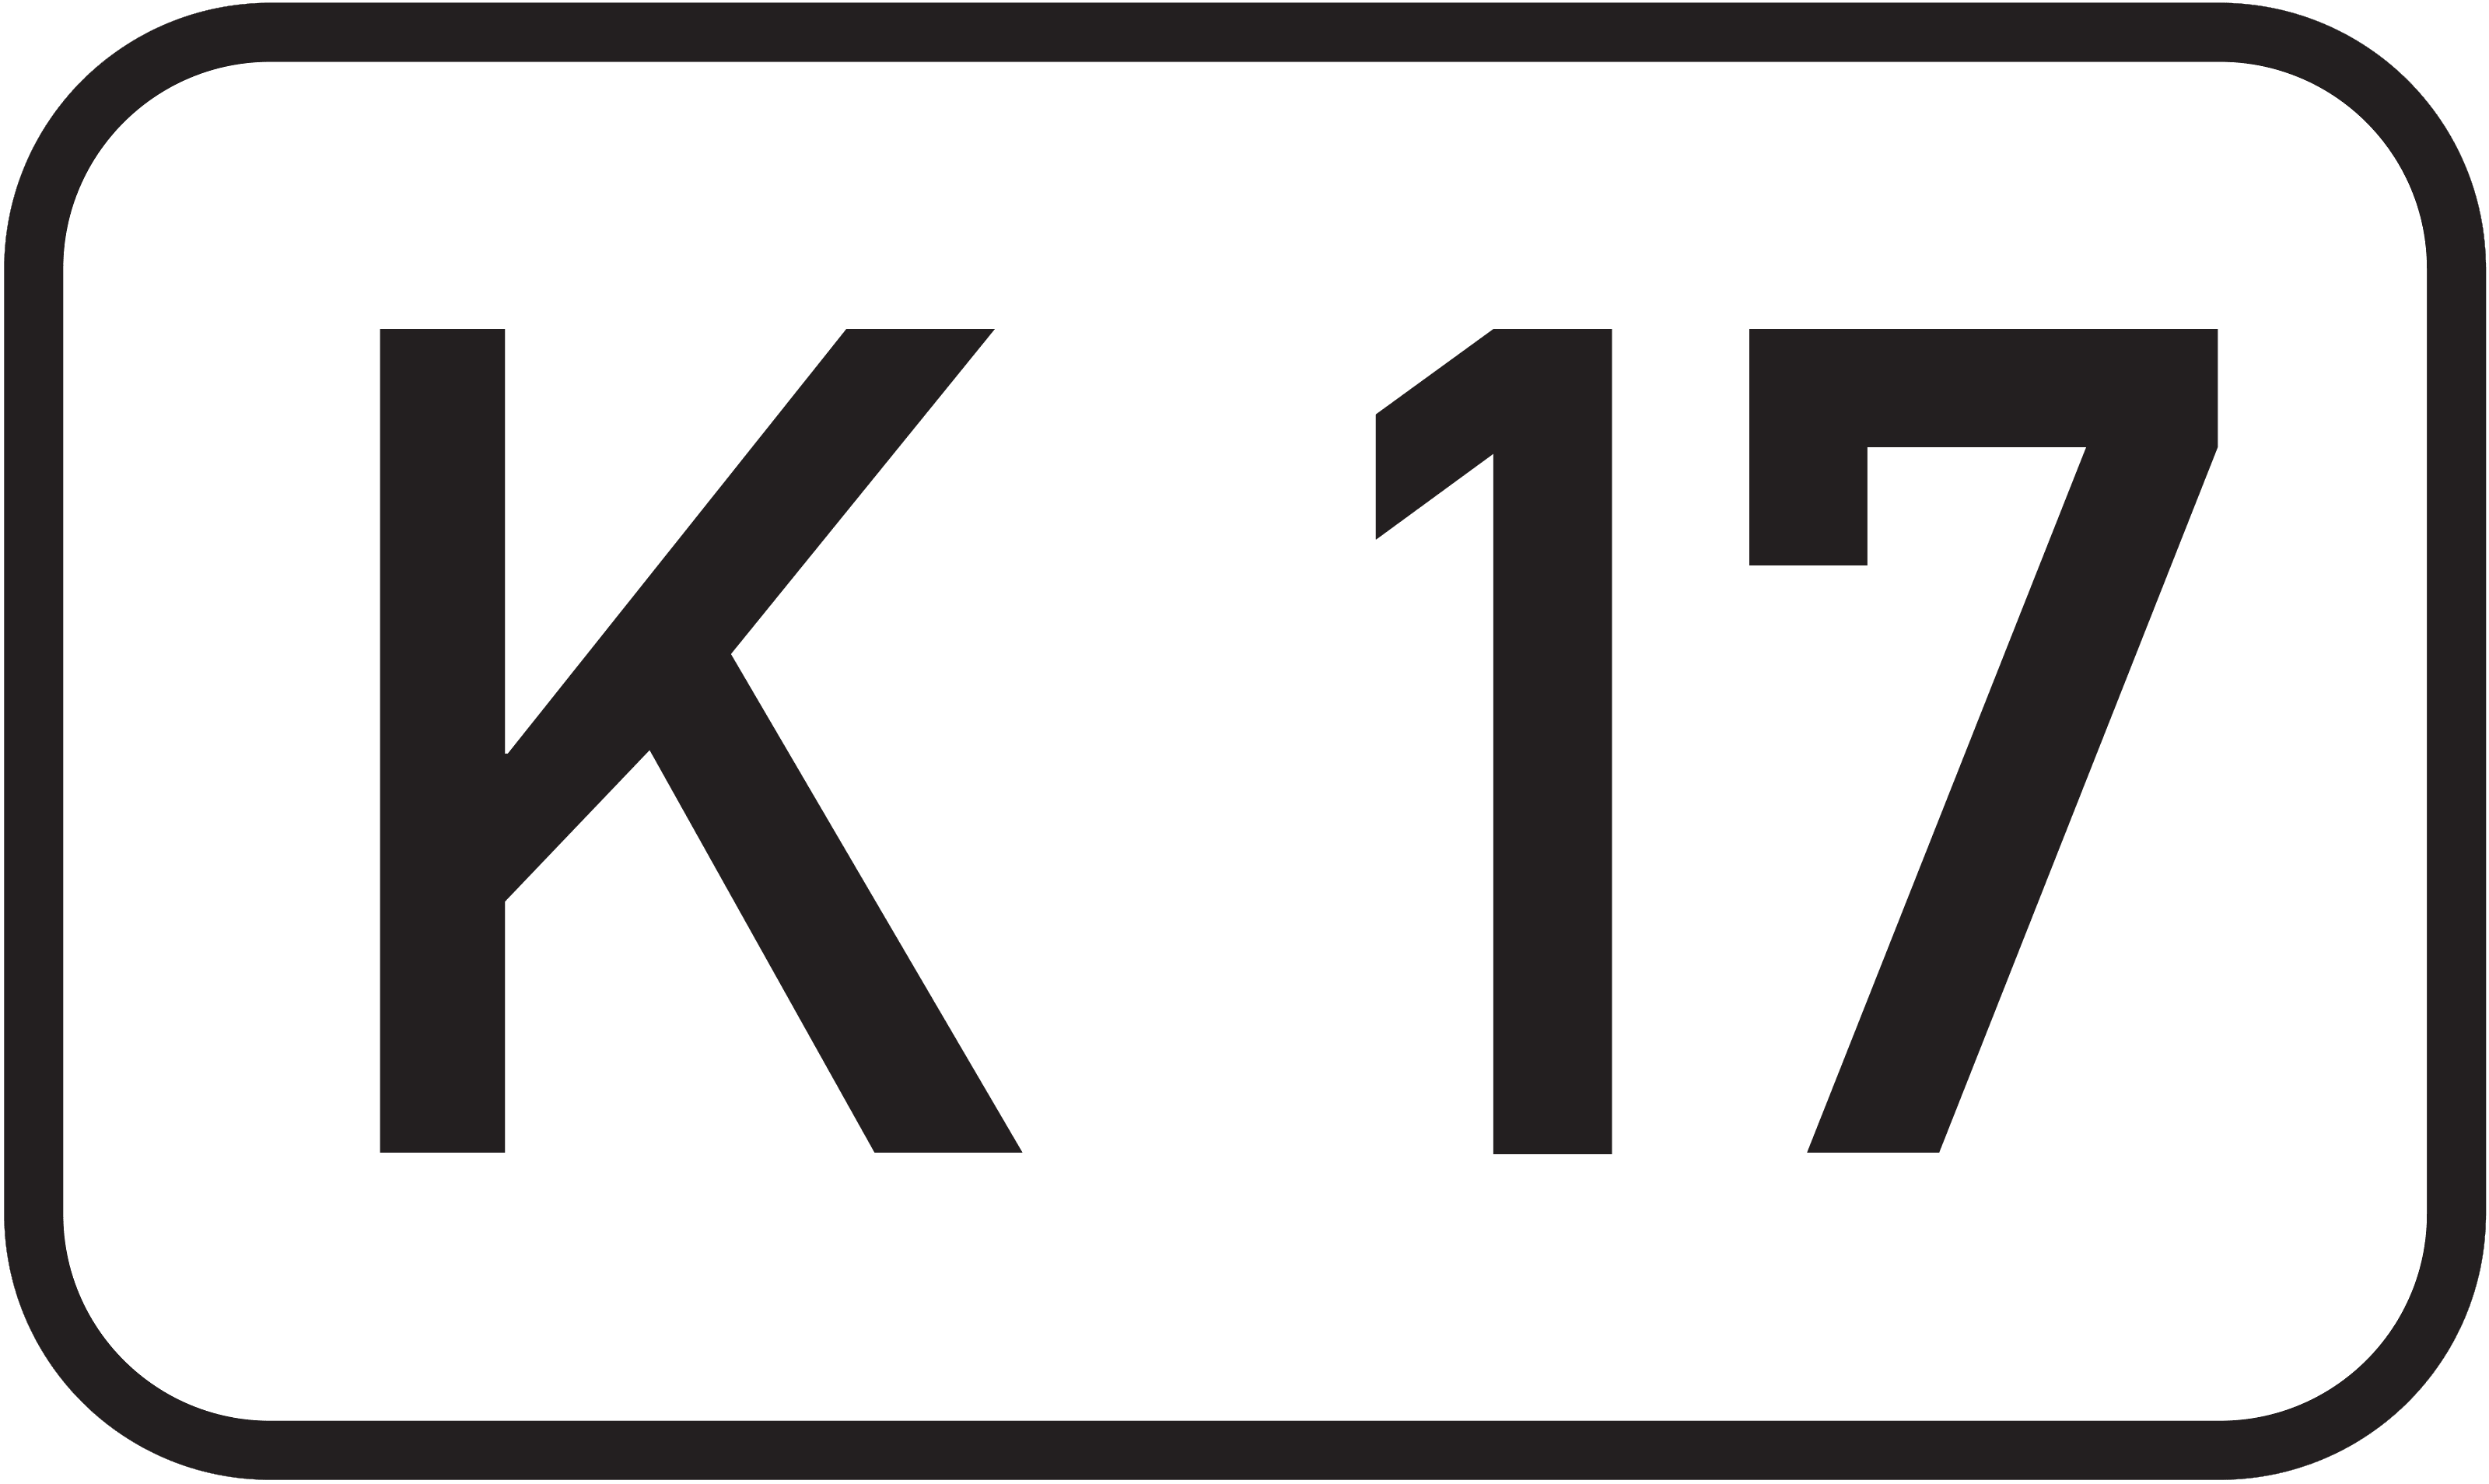 Bundesstraße K 17